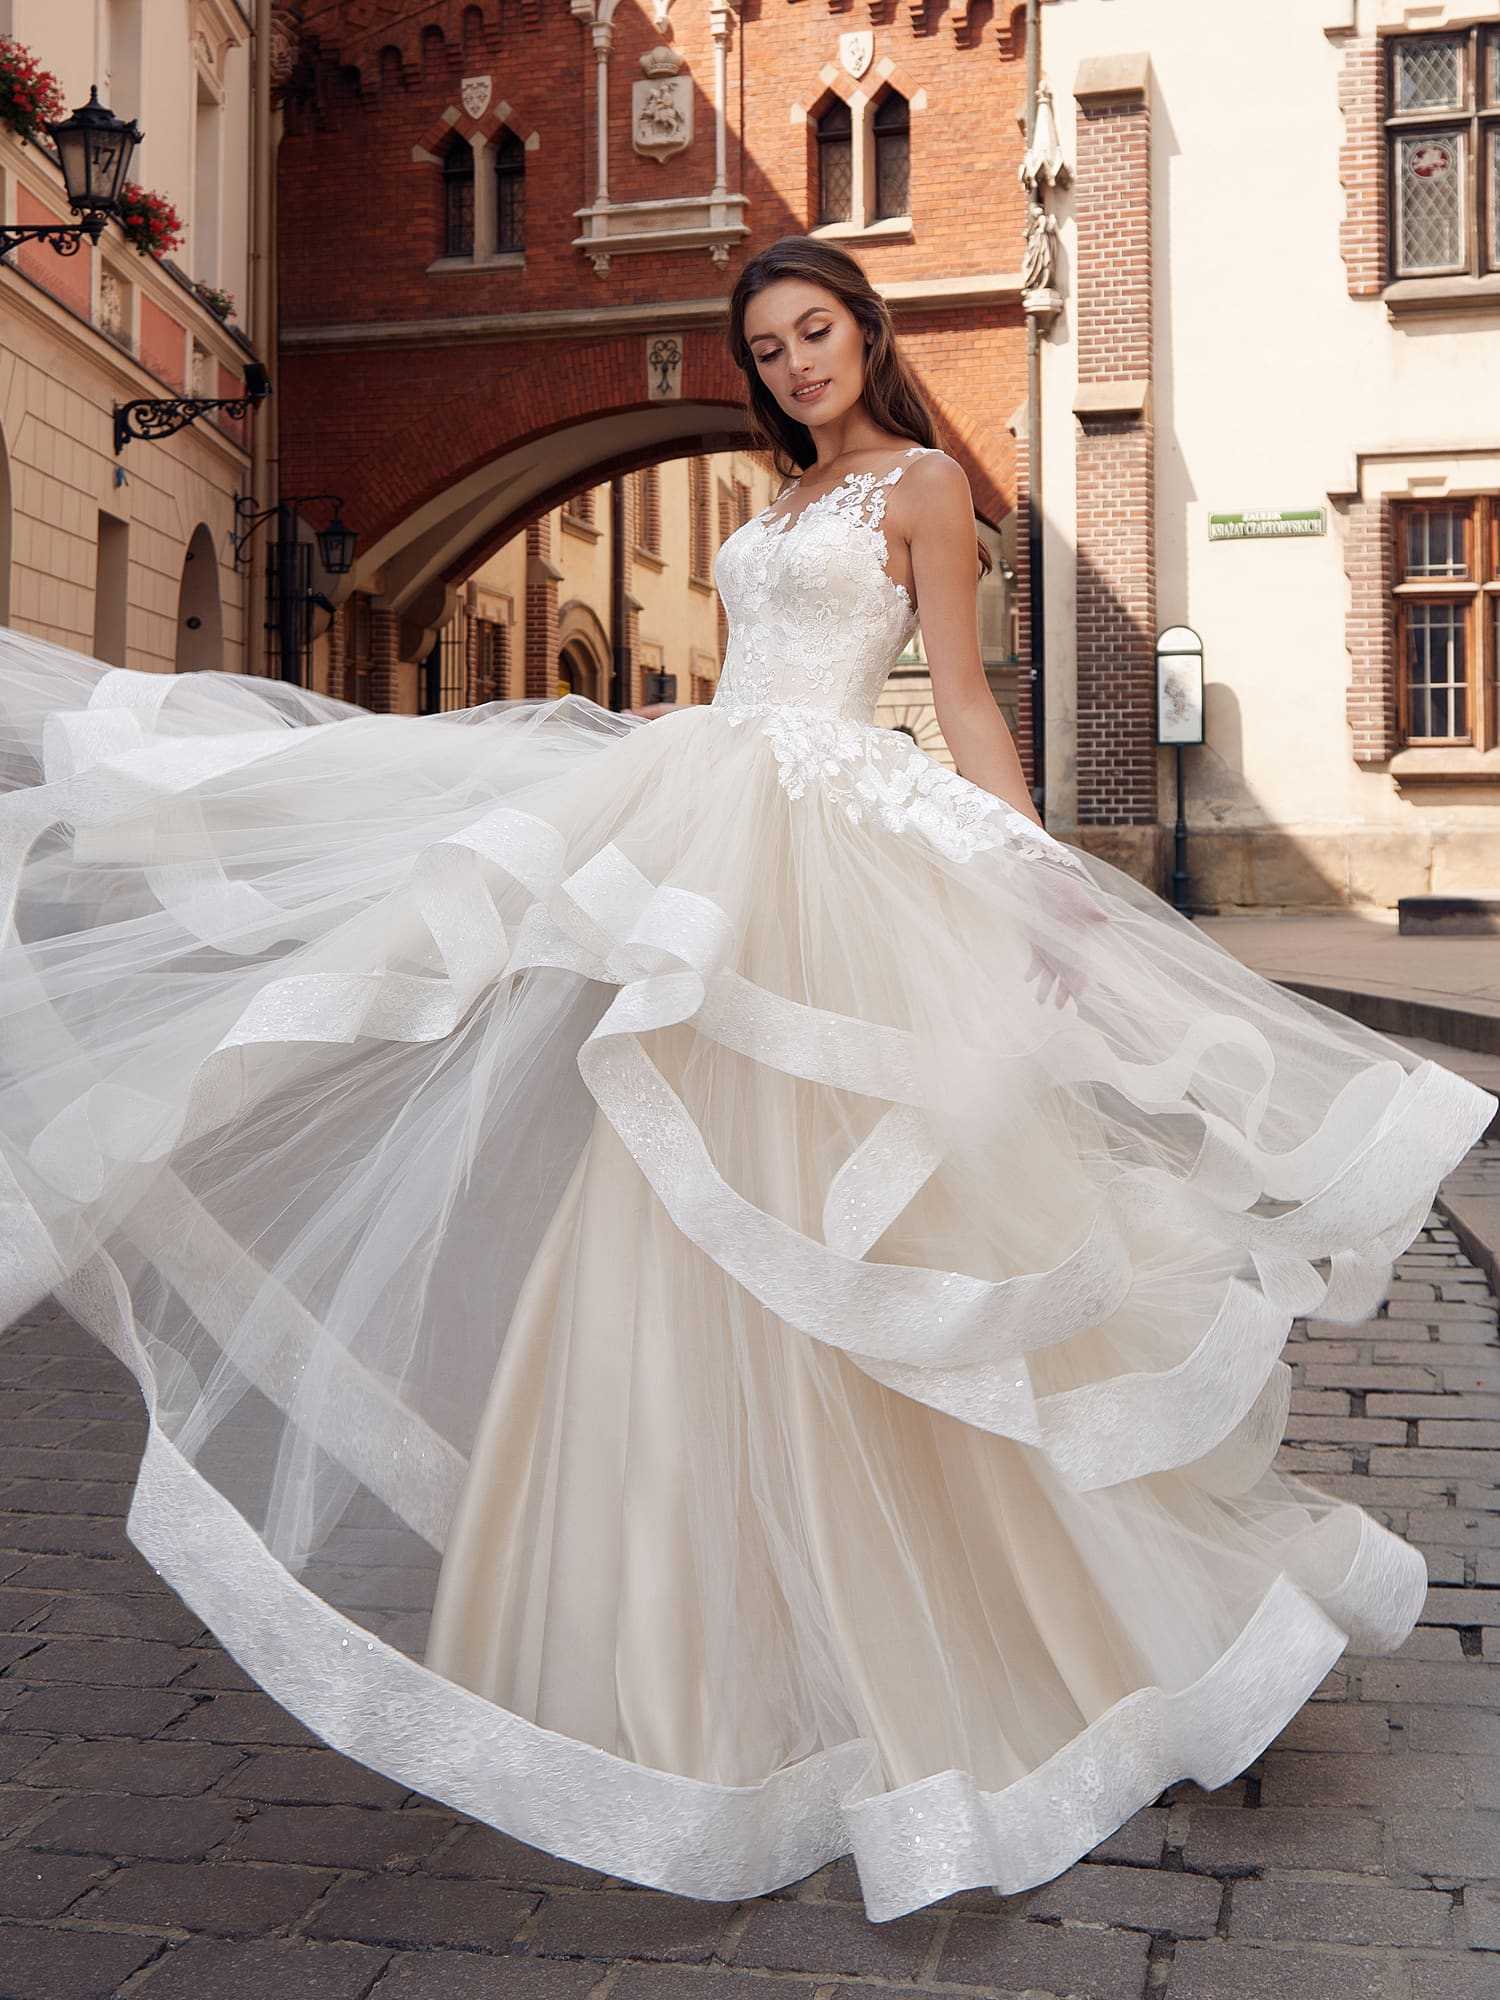 Свадебные букеты 2021 самые красивые и модные варианты фото - модный журнал